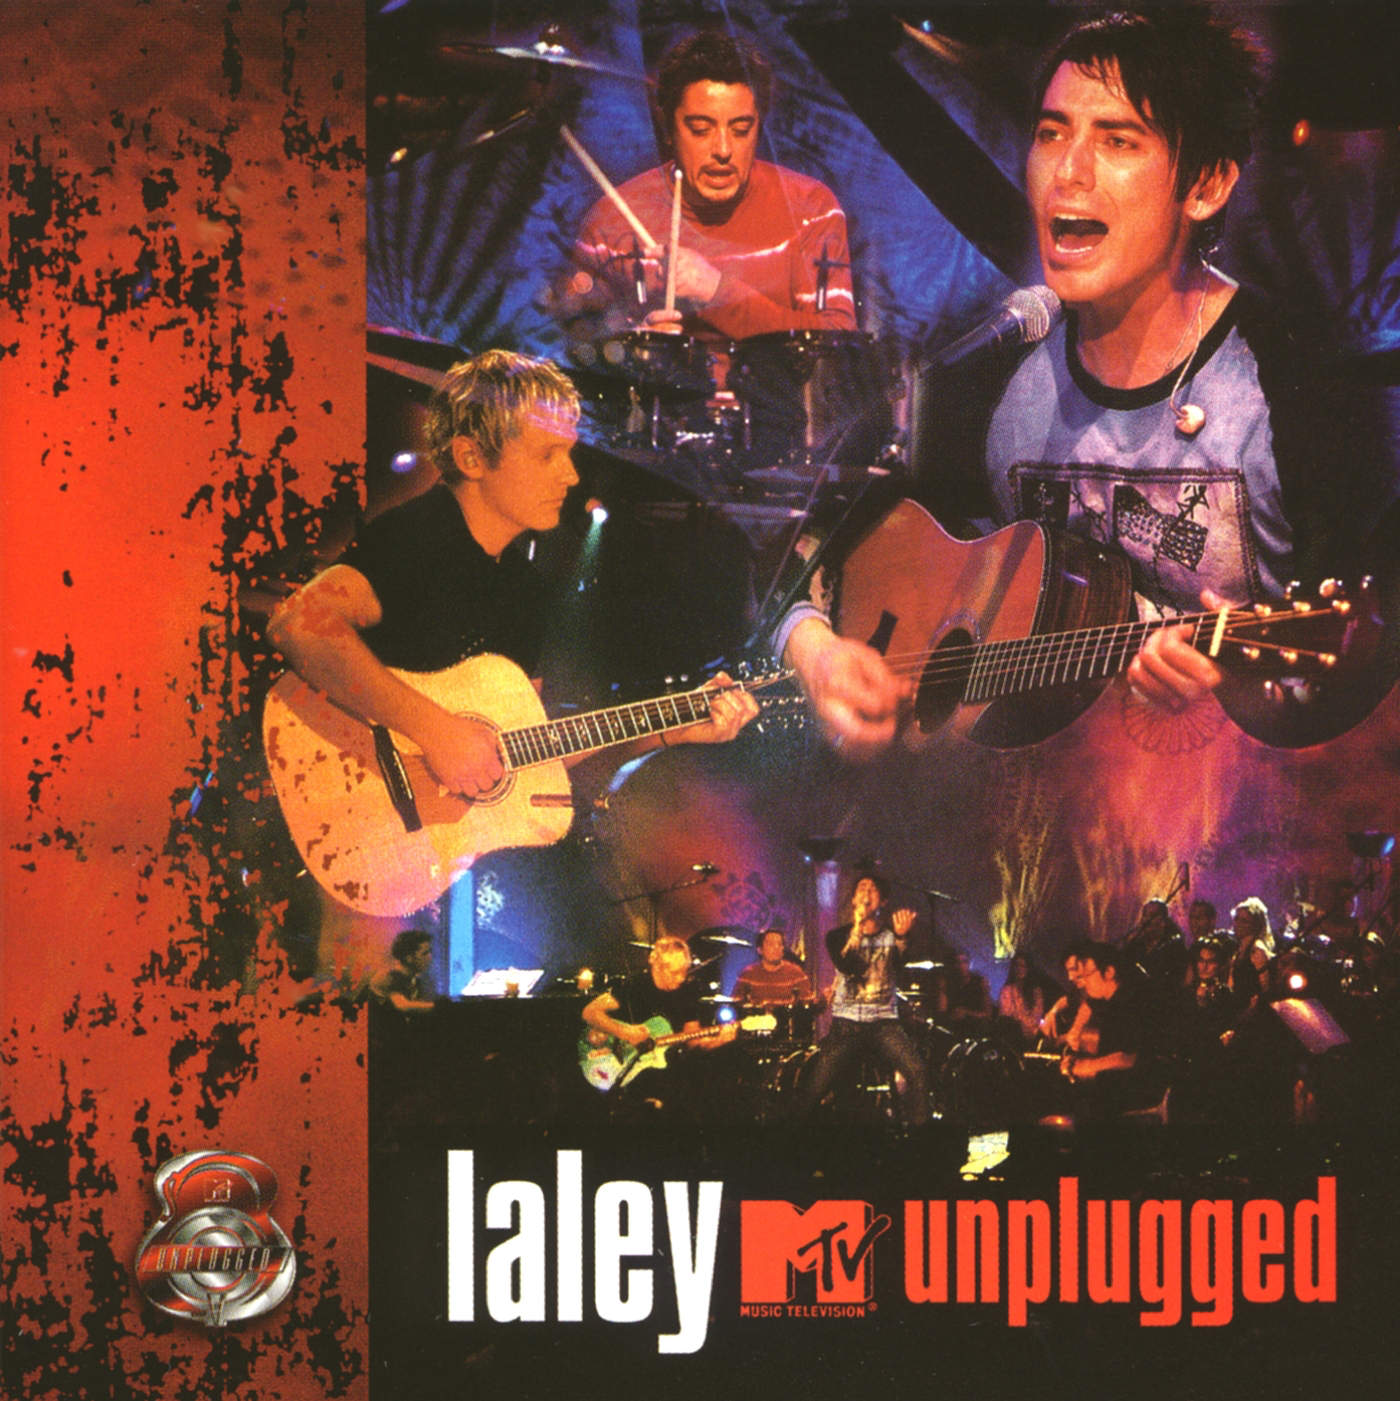 La Ley MTV Unplugged cover artwork